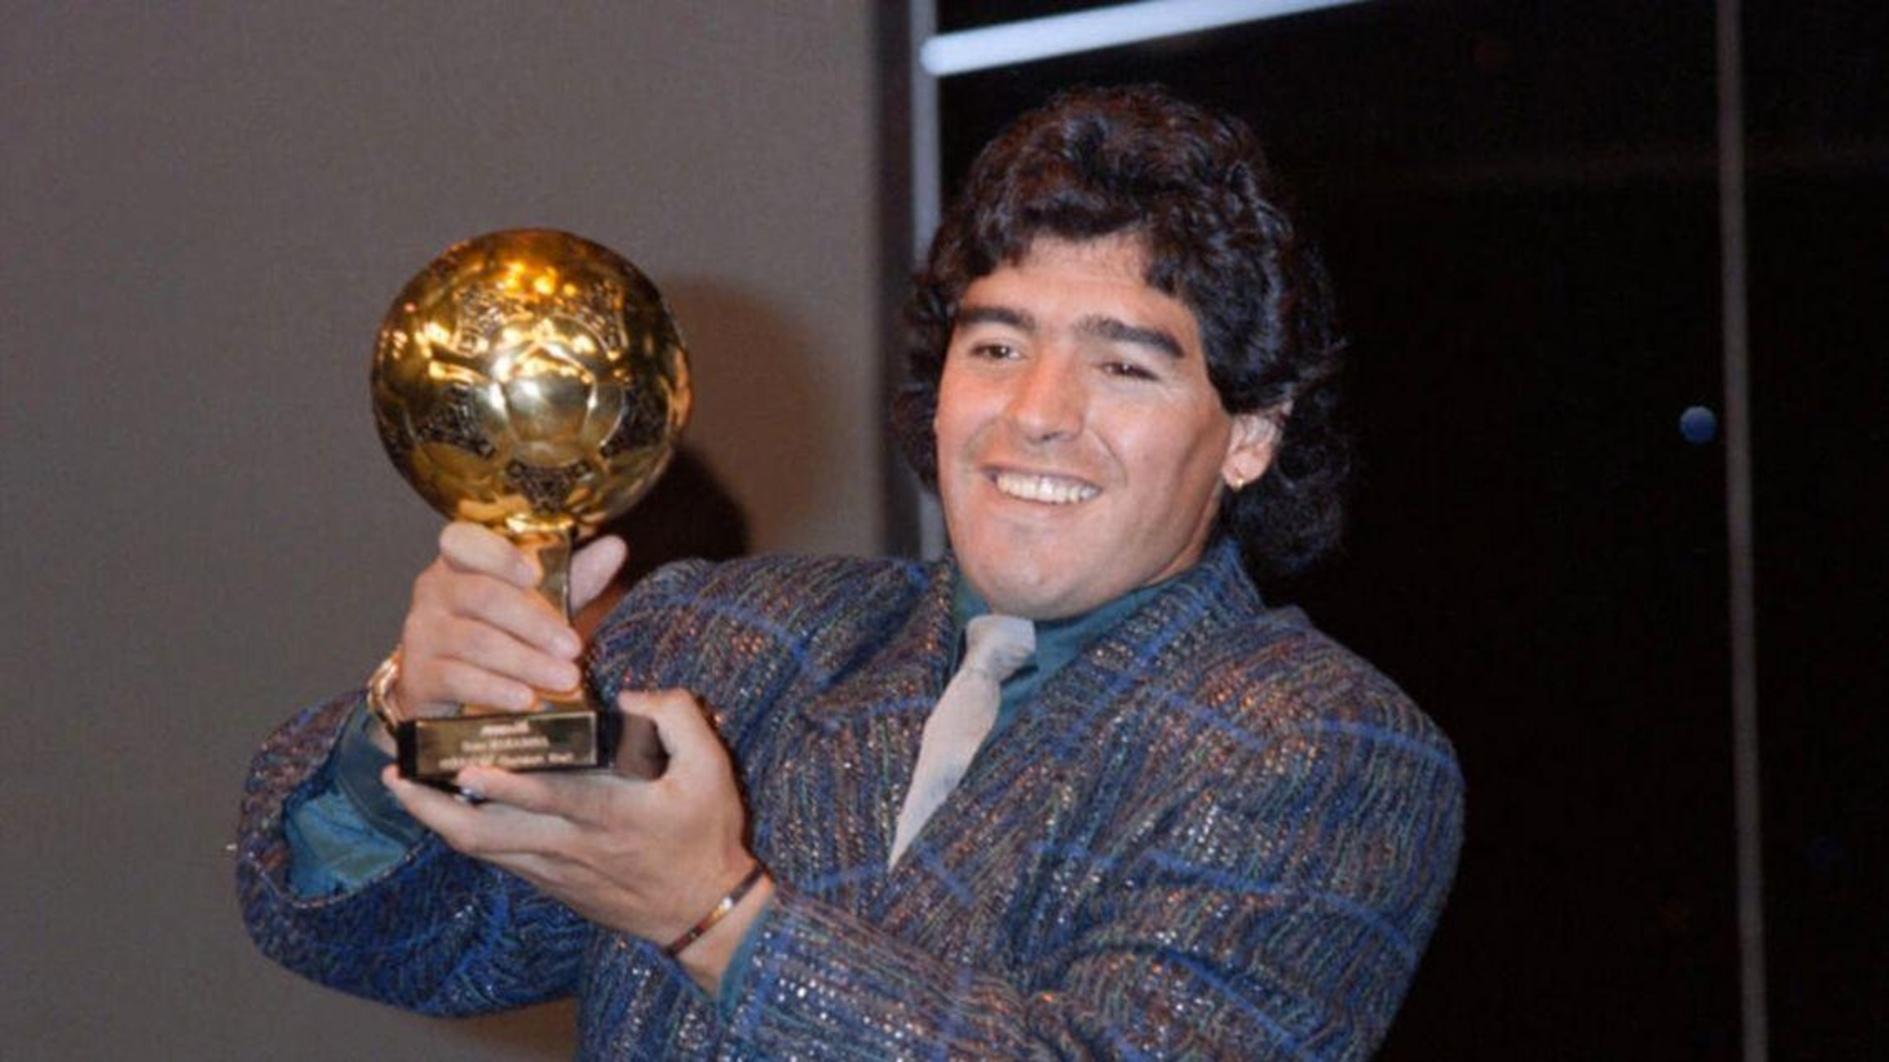 De erfgenamen van Maradona verliezen de strijd om de veiling van de WK Gouden Bal-trofee te blokkeren